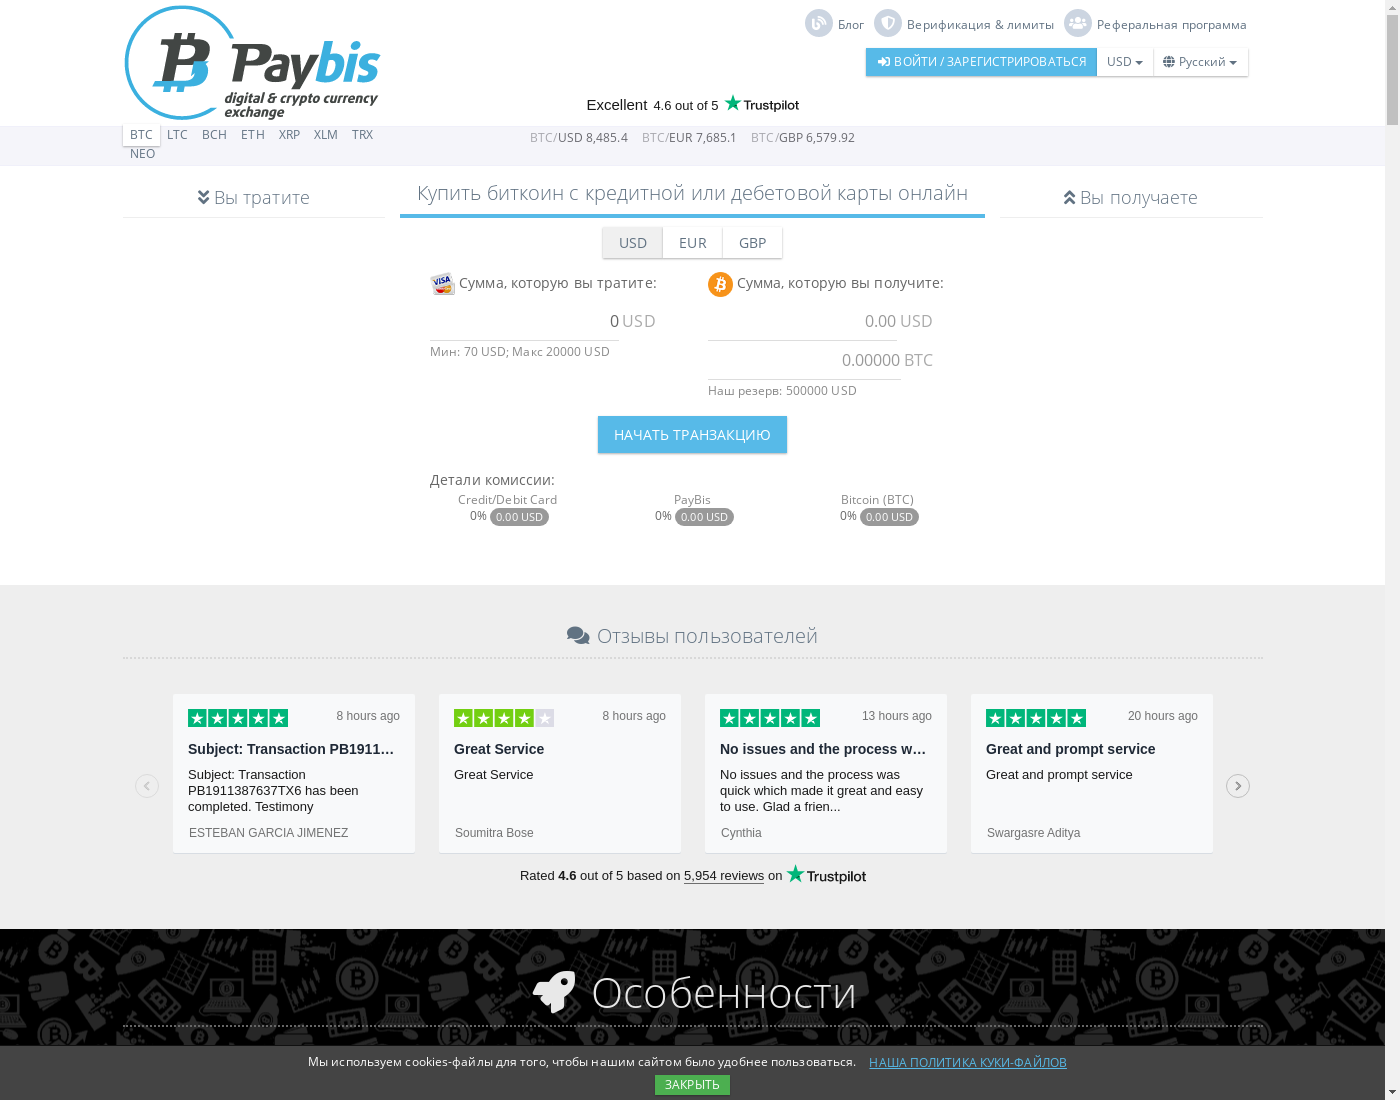 PayBis интерфейс пользователя: домашняя страничка на языке — Русский